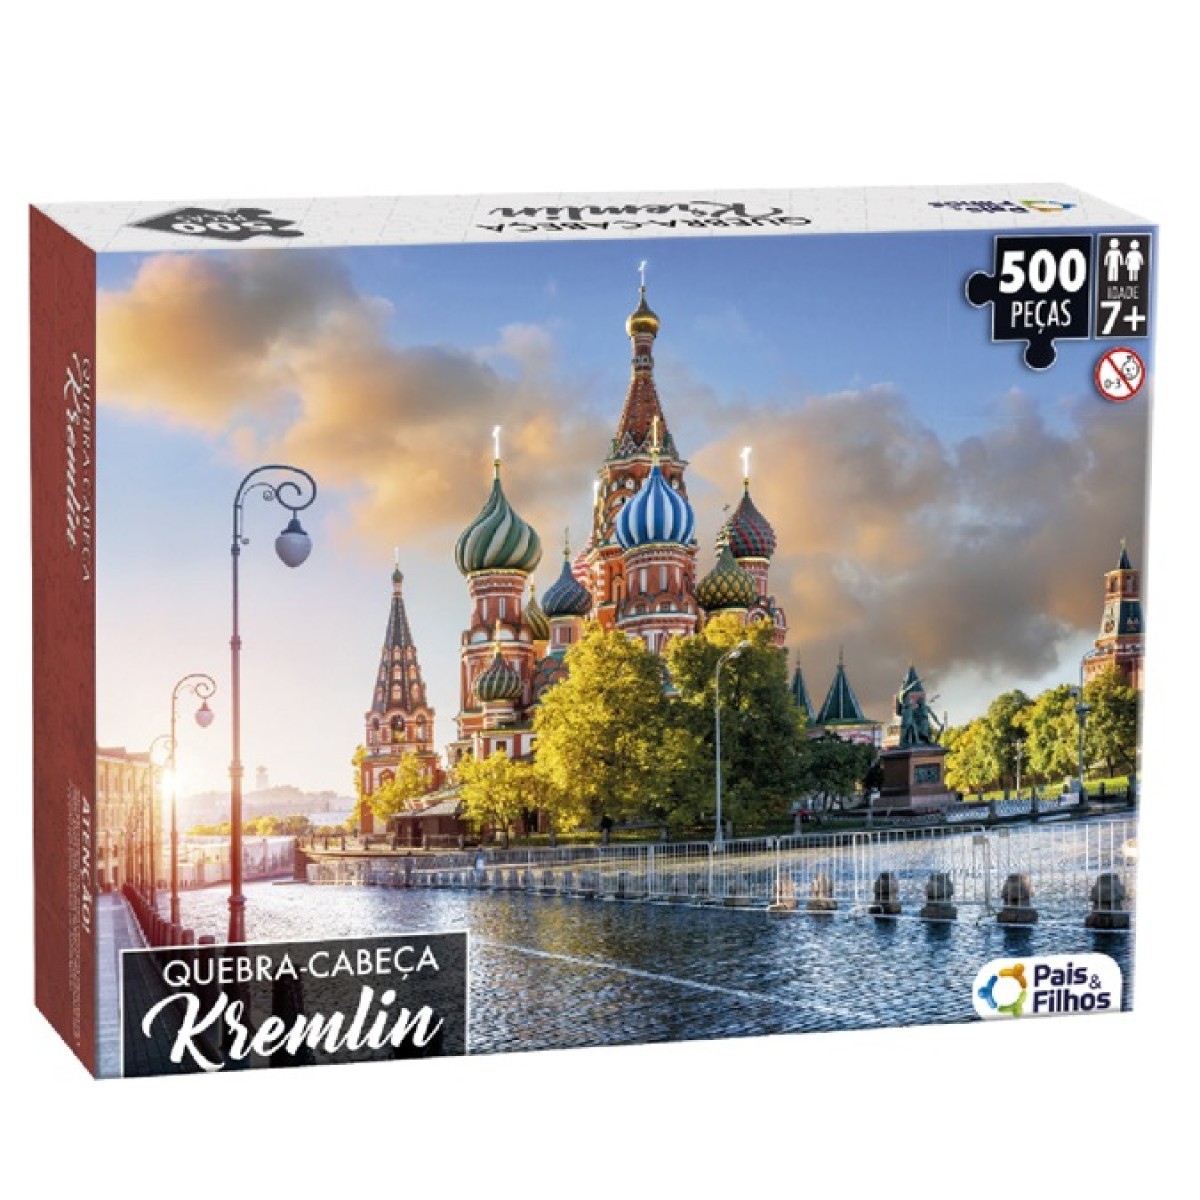 Quebra cabeça gigante kremlin com 500 peças-790683-93718